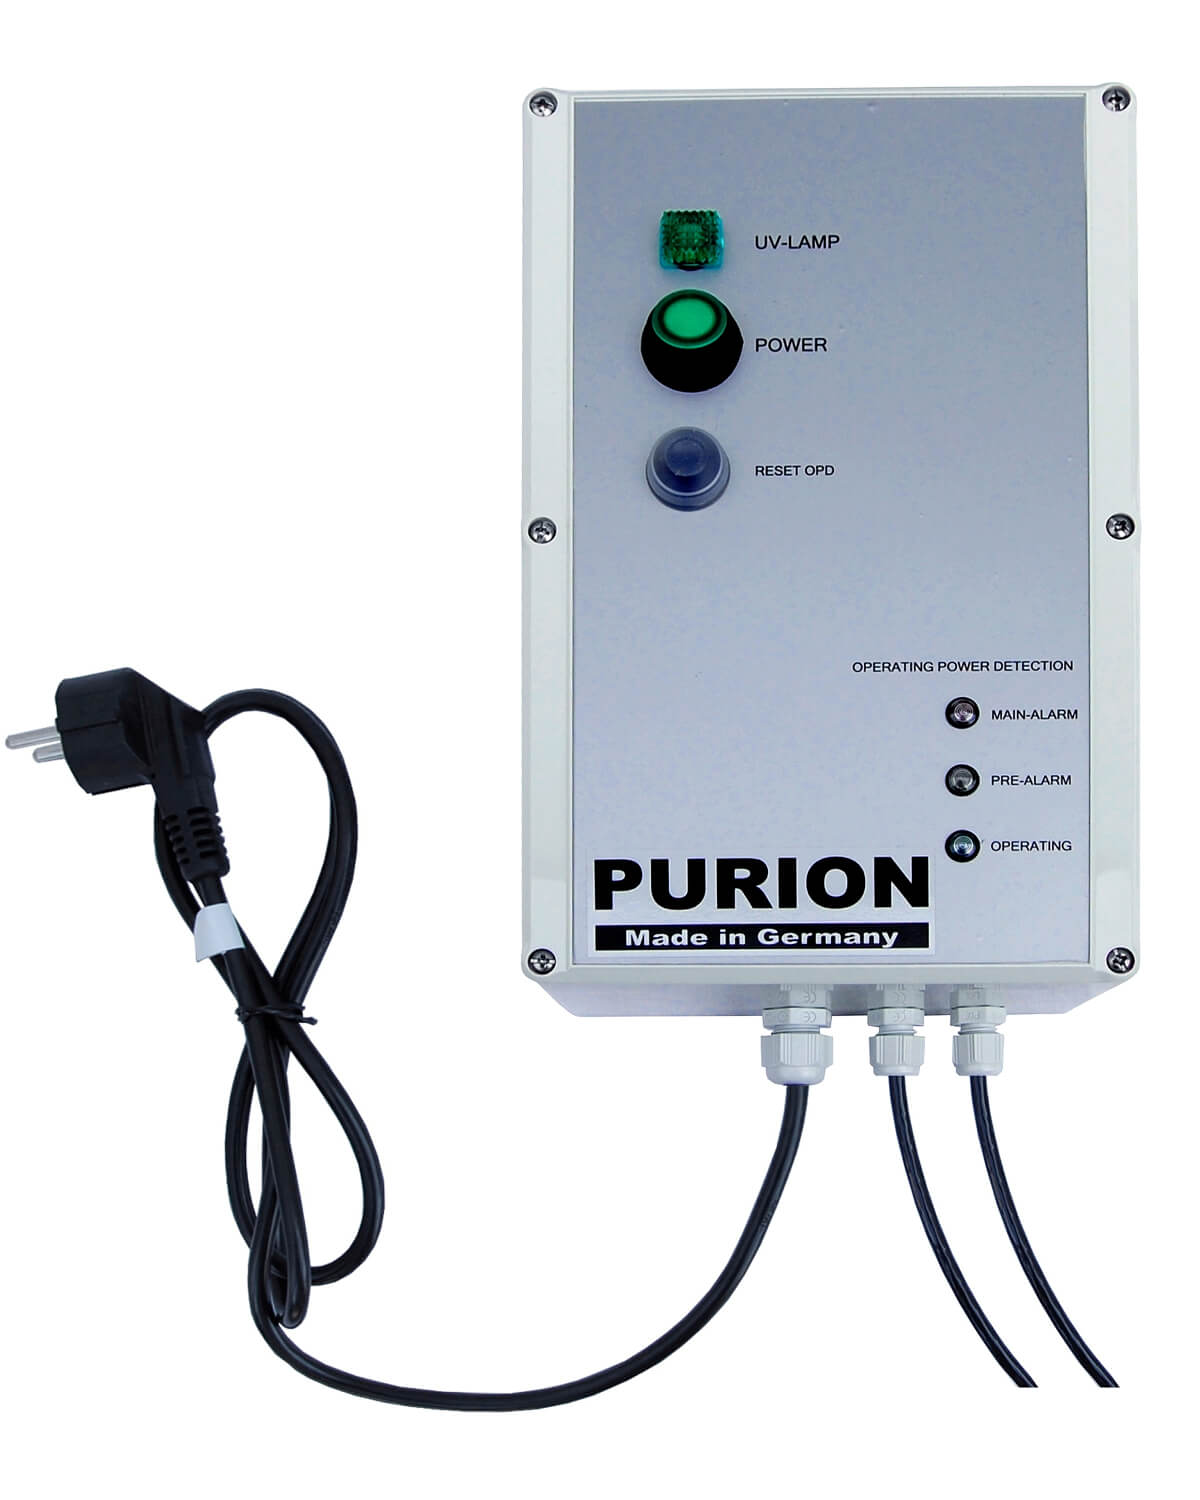 PURION 1000 H OPD der PURION GmbH ist ein leistungsstarkes UV-C-Desinfektionssystem zur Beseitigung von Legionellen.